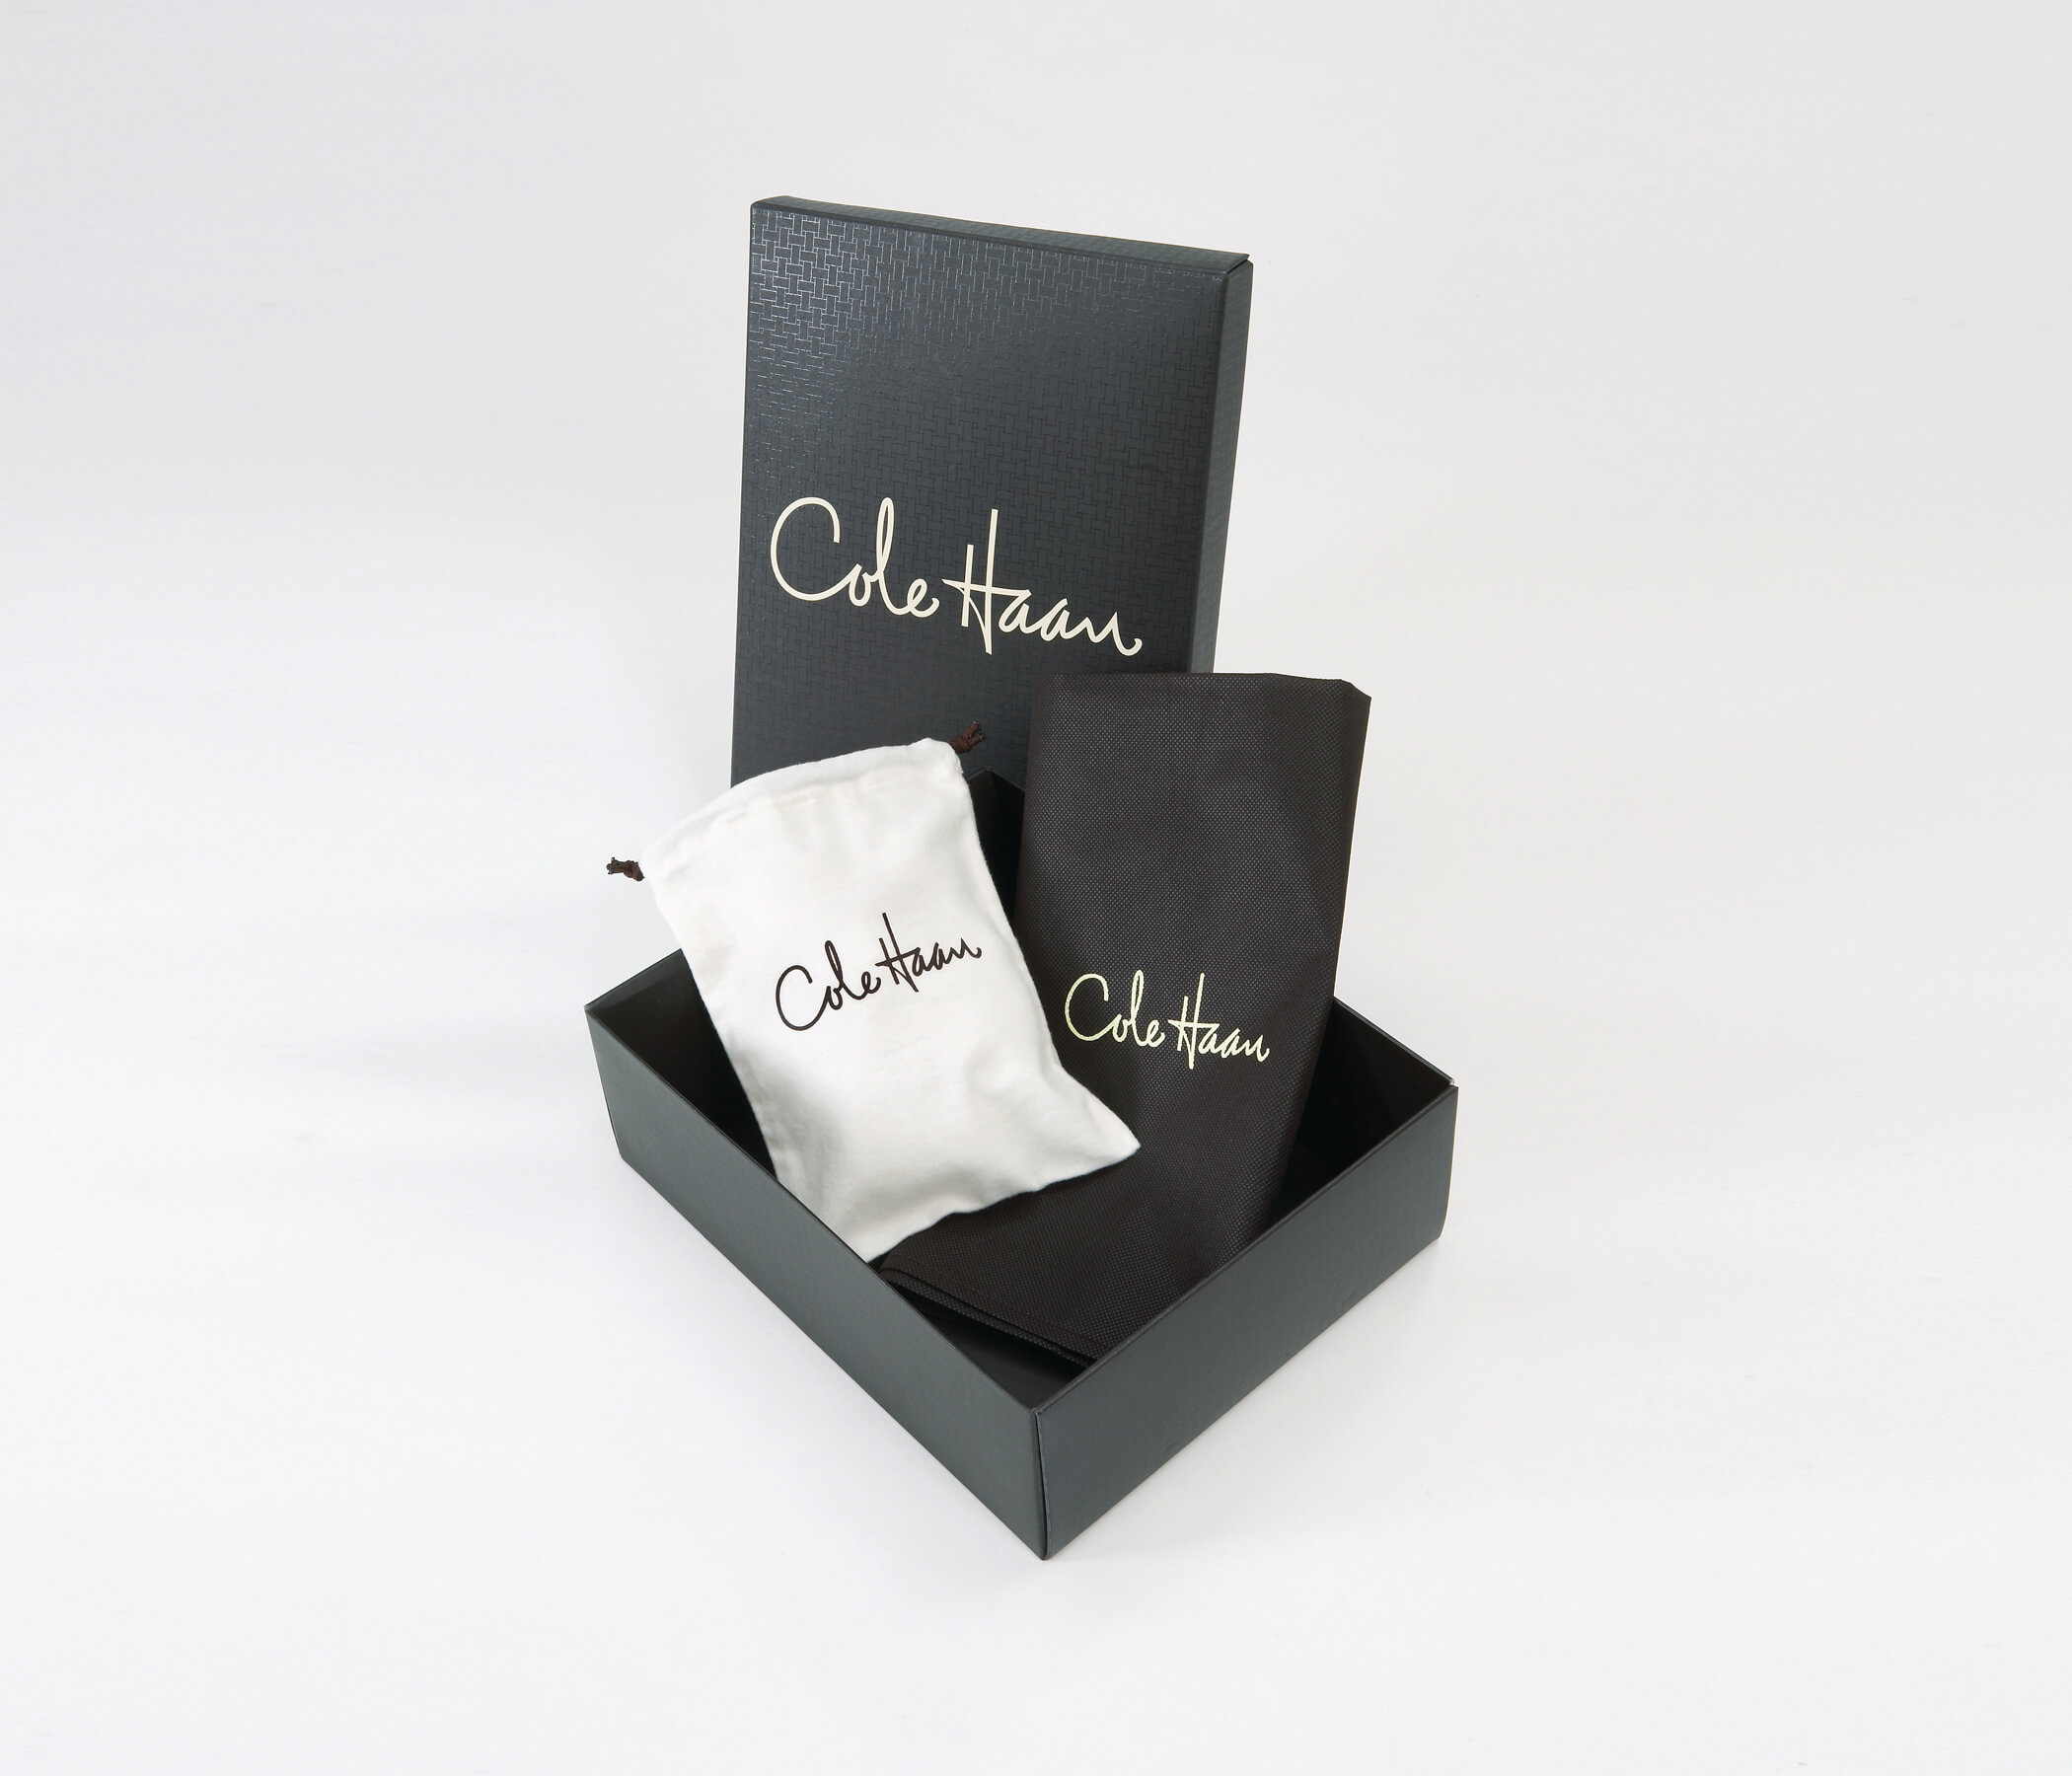 Cole Haan custom retail packaging